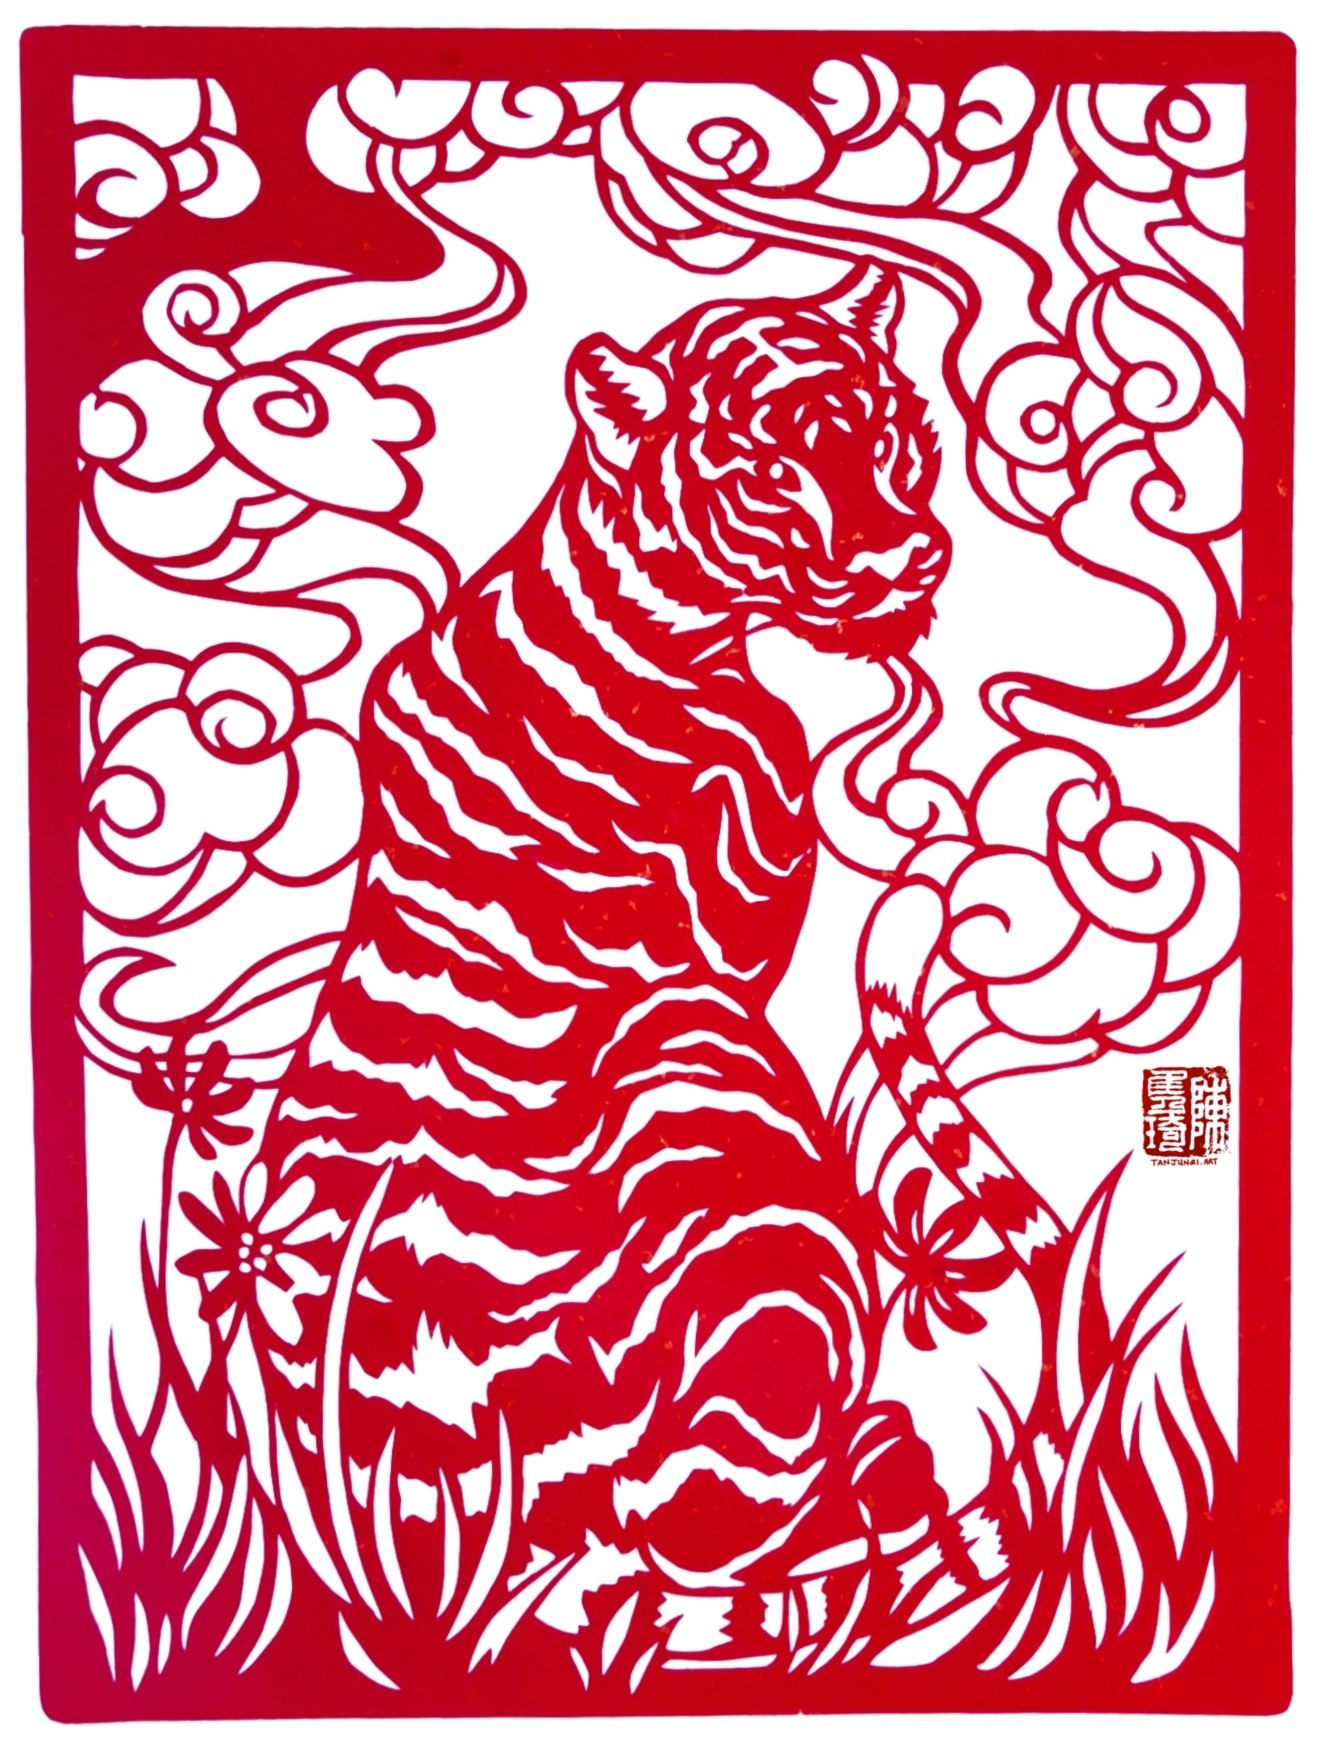 带着四方形框子的剪纸，描绘着坐在草原上的老虎，背后的空中则飘着祥云。